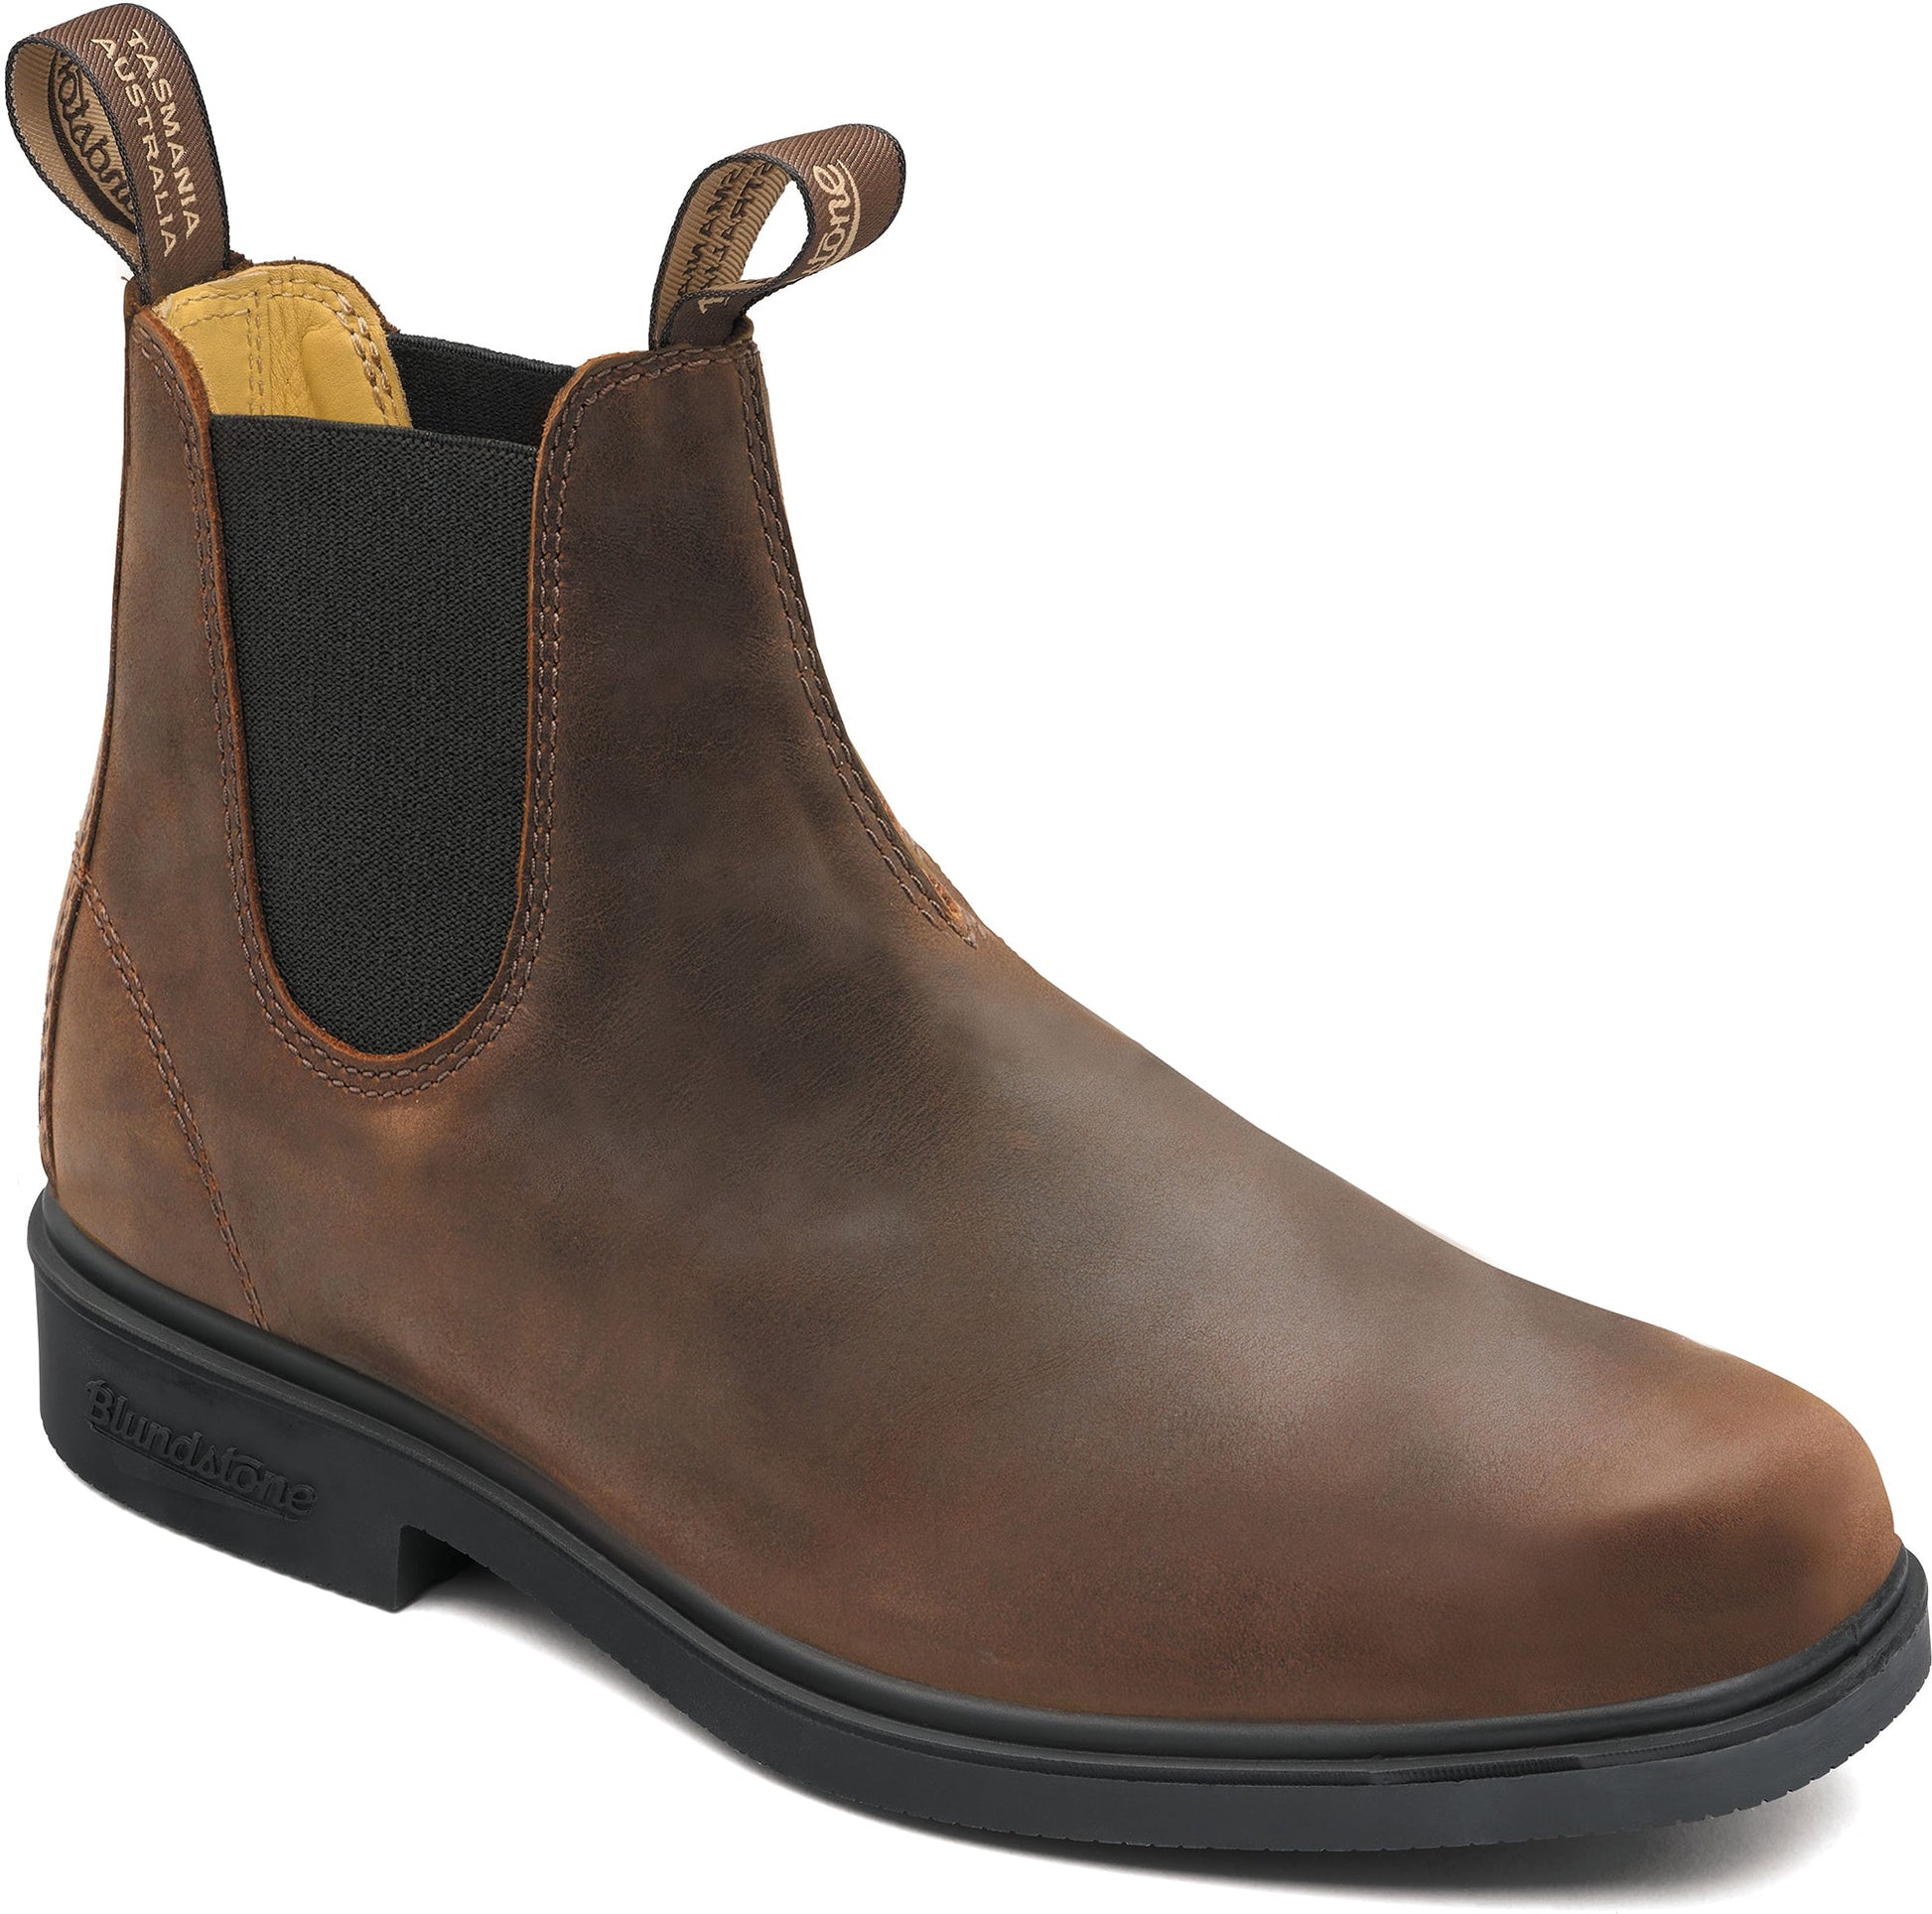 Blundstone 2029 Dress Boot Antique Brown - Grady’s Feet Essentials - Blundstone